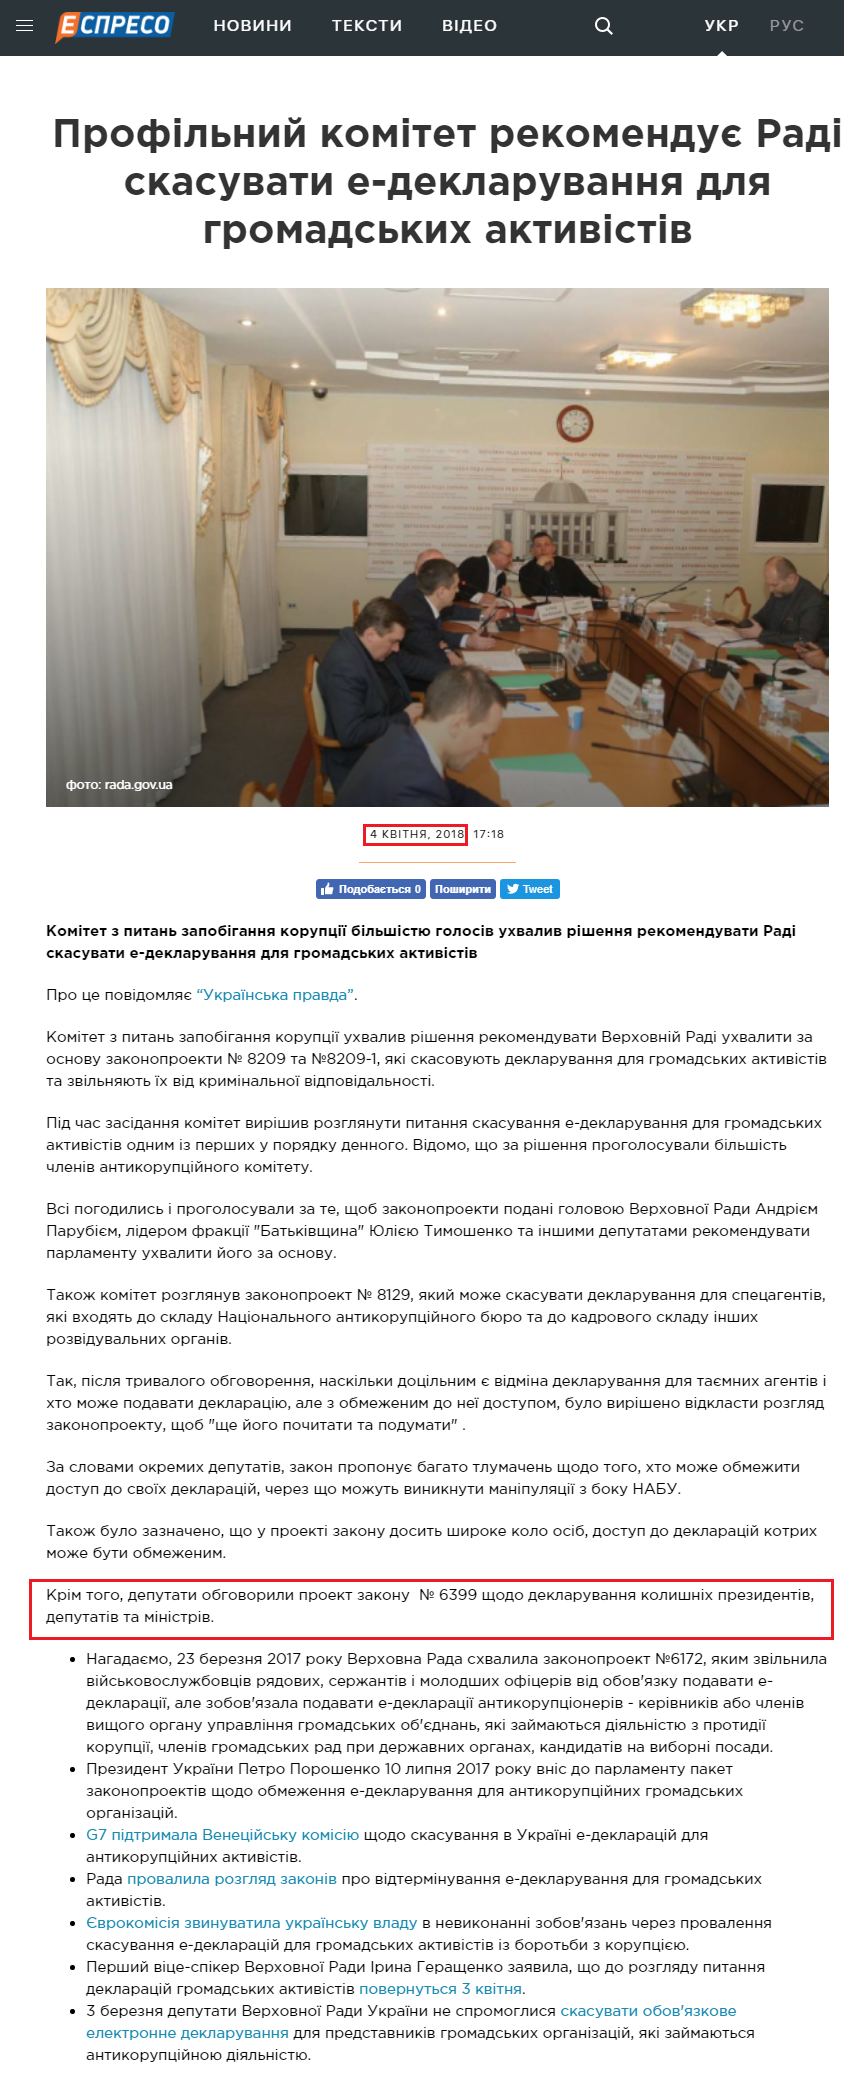 https://espreso.tv/news/2018/04/04/profilnyy_komitet_rekomenduye_radi_skasuvaty_e_deklaruvannya_dlya_gromadskykh_aktyvistiv